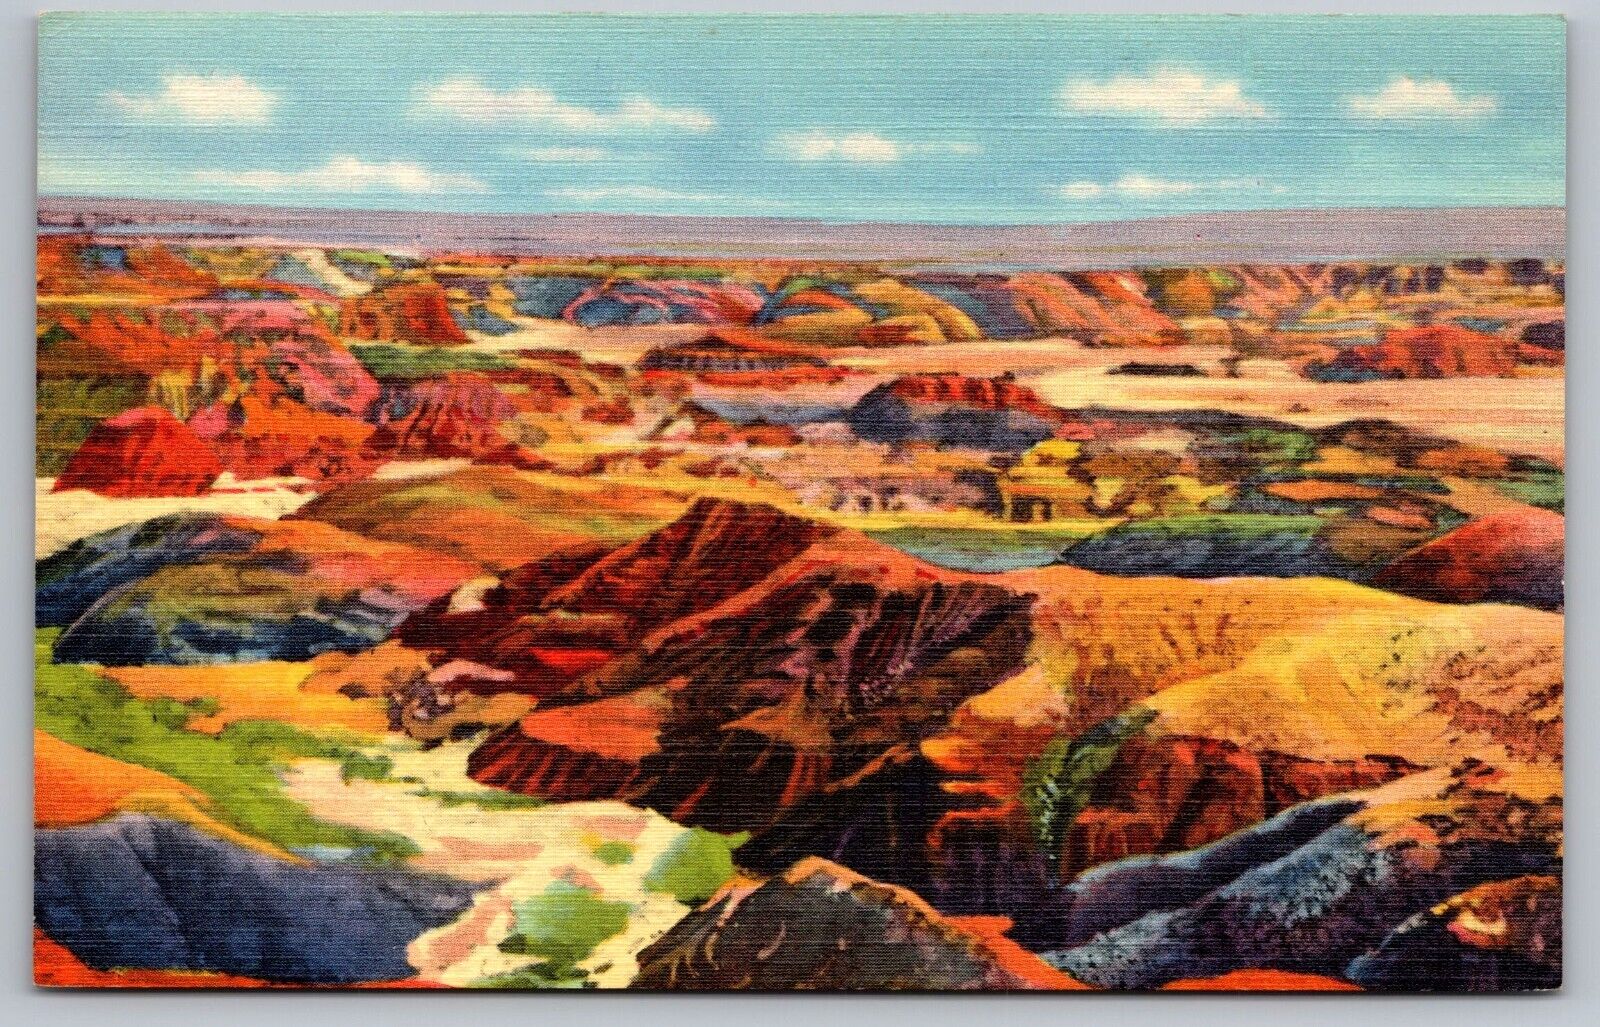 The Painted Desert Arizona Vintage View Genuine Curteich Linen Postcard